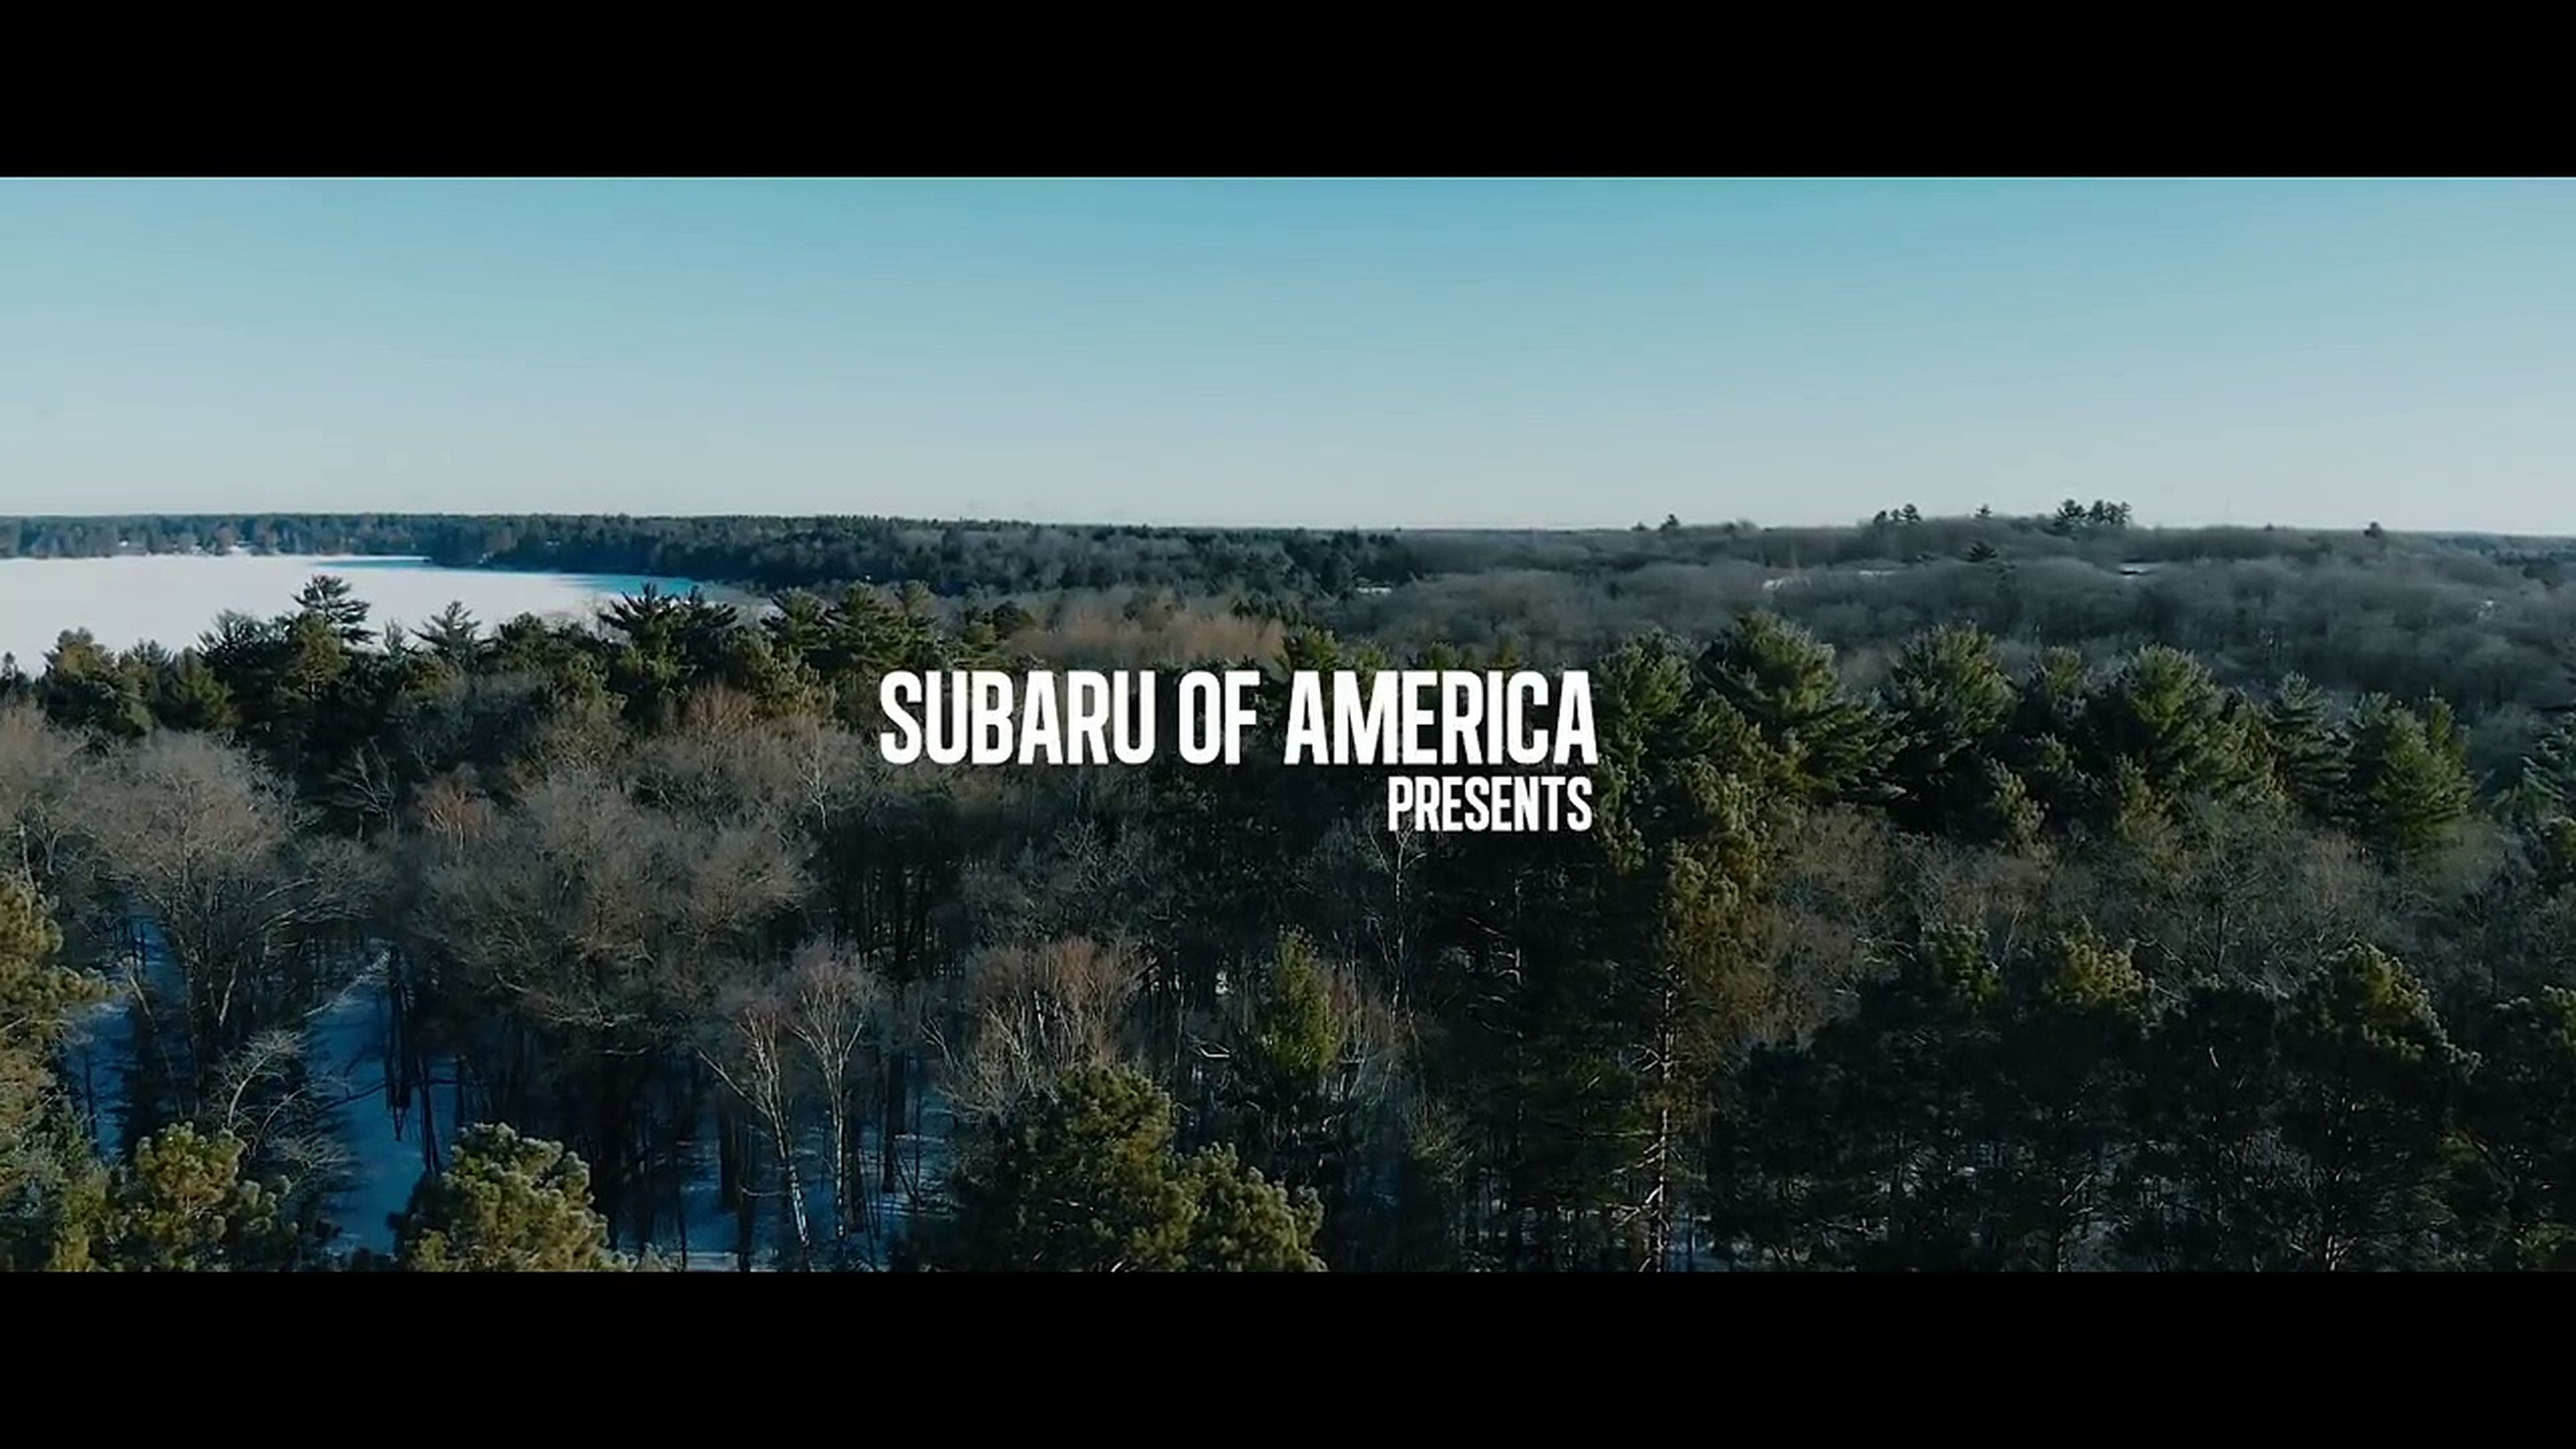 VÍDEO: ¿Llega el calor? Refréscate con el Subaru Team USA en hielo [TG]